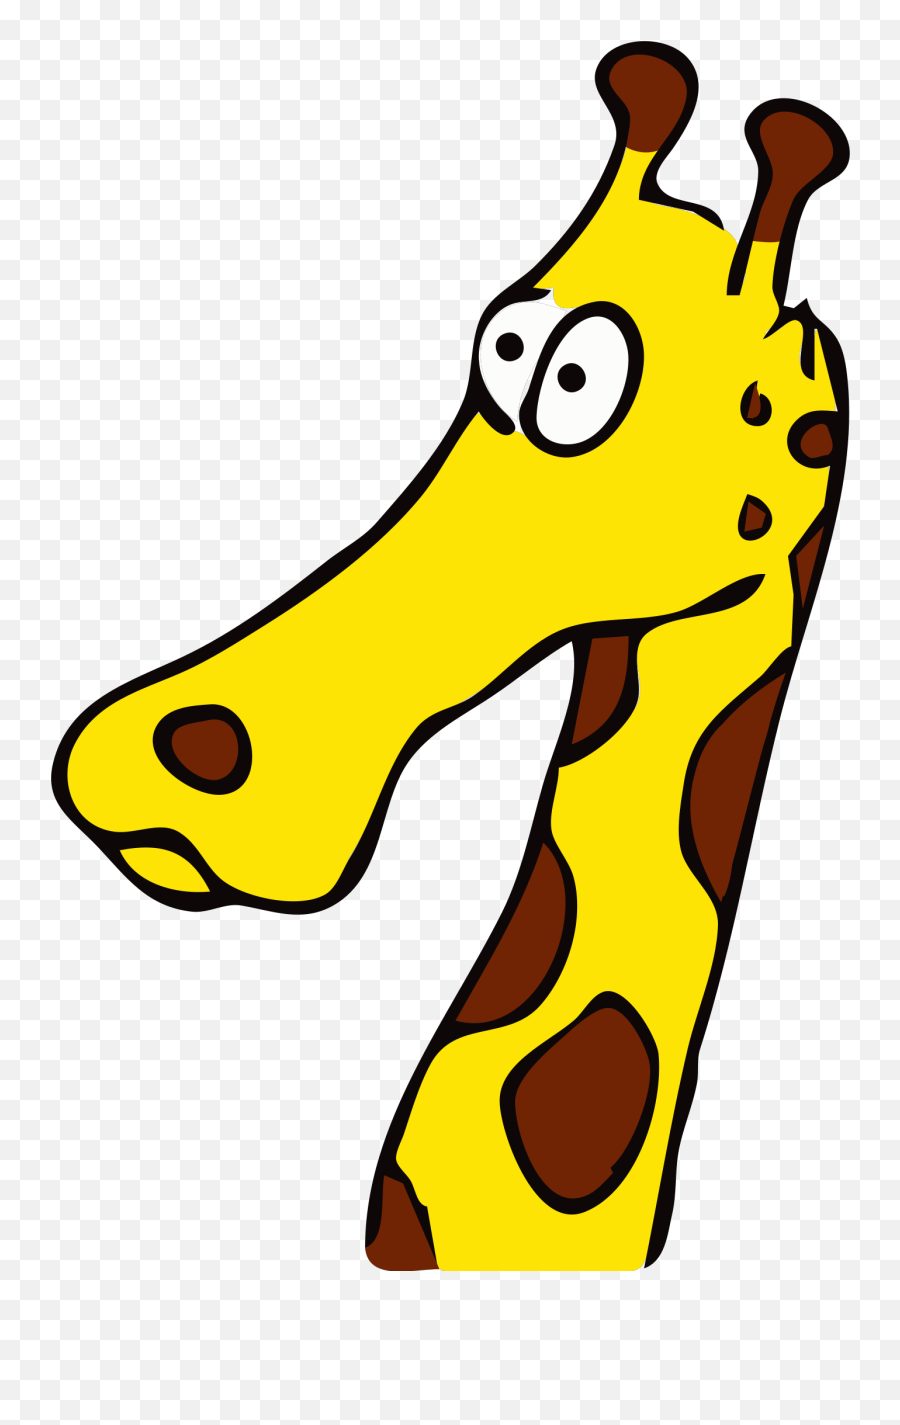 Cartoon Giraffe Png Svg Clip Art For Web - Download Clip Confused Giraffe Cartoon Emoji,Giraffe Emoji Png